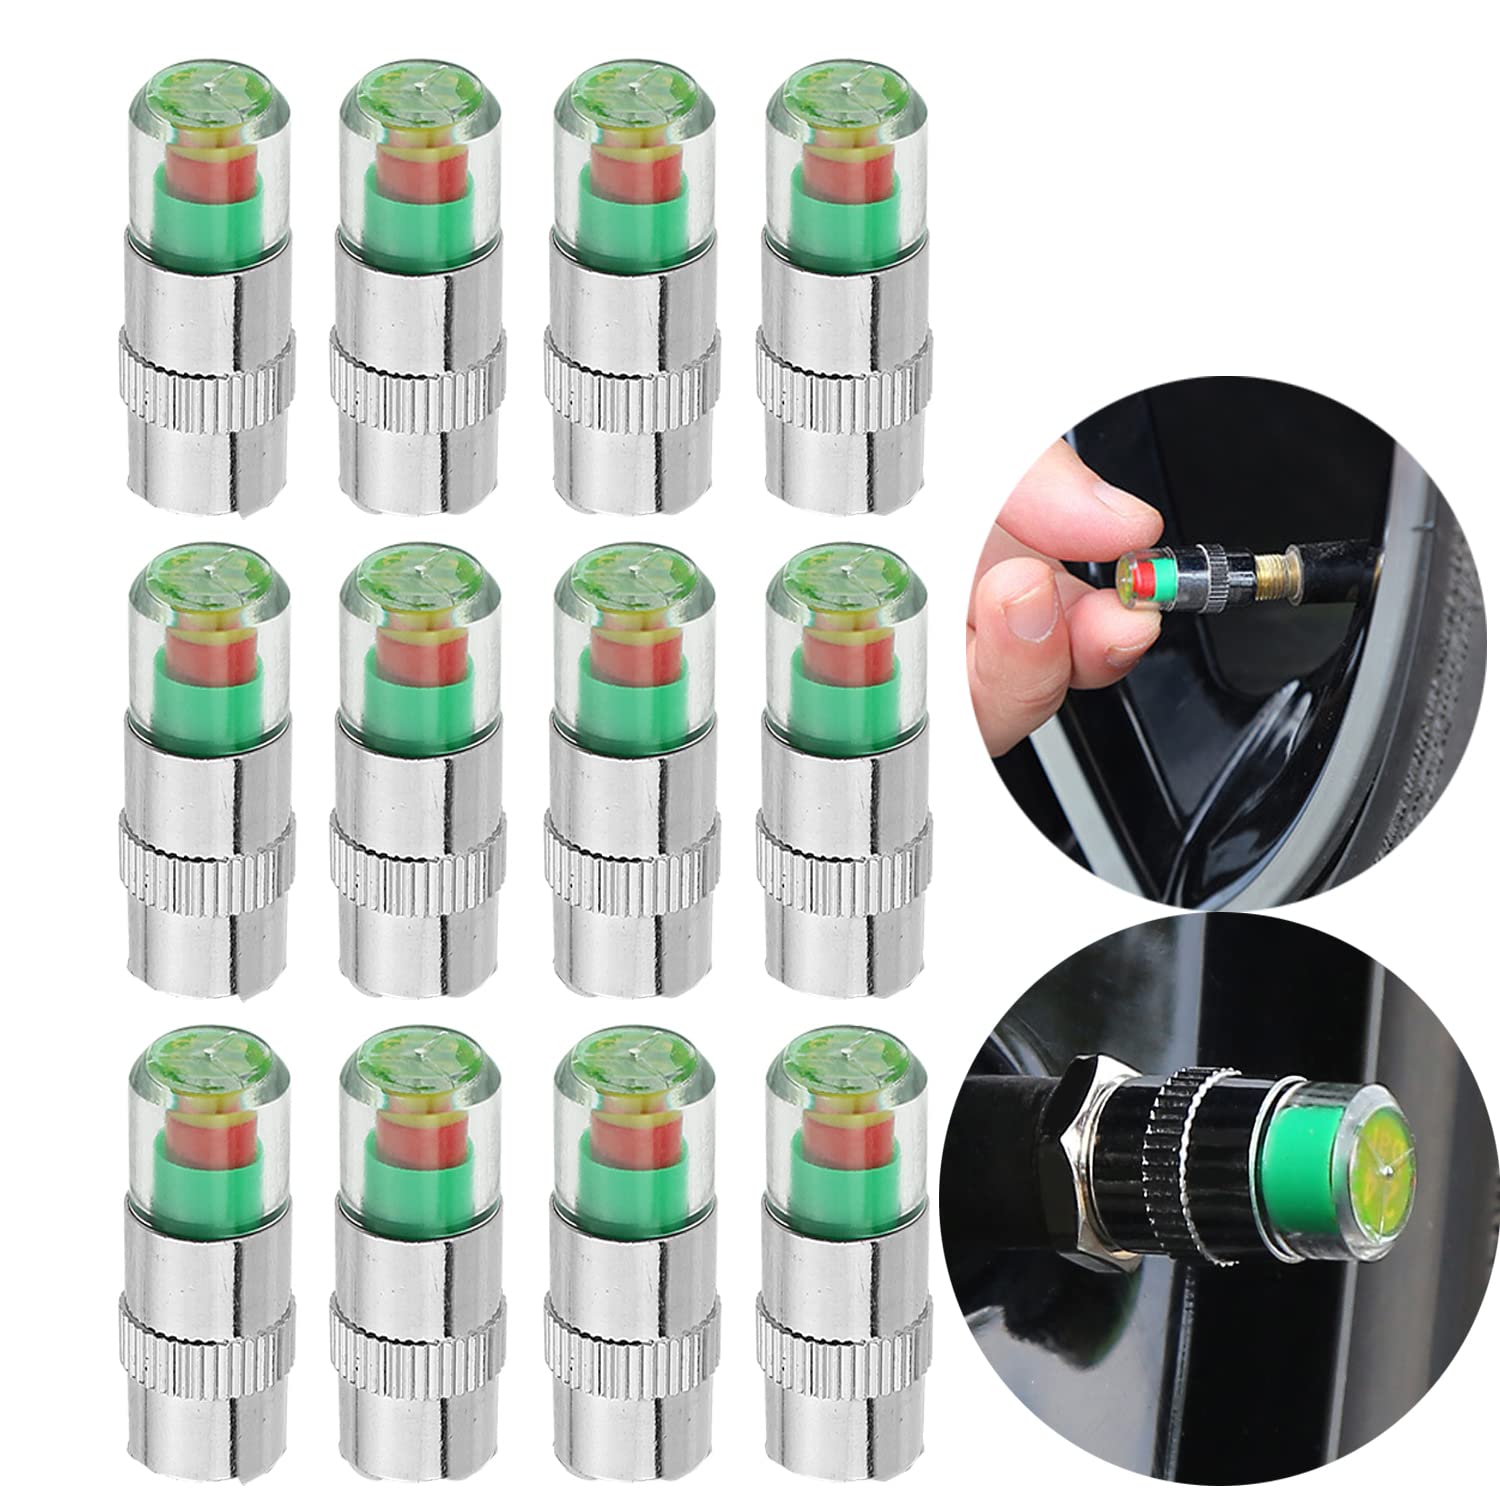 12 stücke autoreifendruckmonitor ventilschaftkappe sensoranzeige, 2,4 Bar 36 PSI Drucküberwachungs-Reifenventilschaftkappen mit 3-farbigem Augenalarm für Autos, Motorräder, Fahrräder. von YoMaris